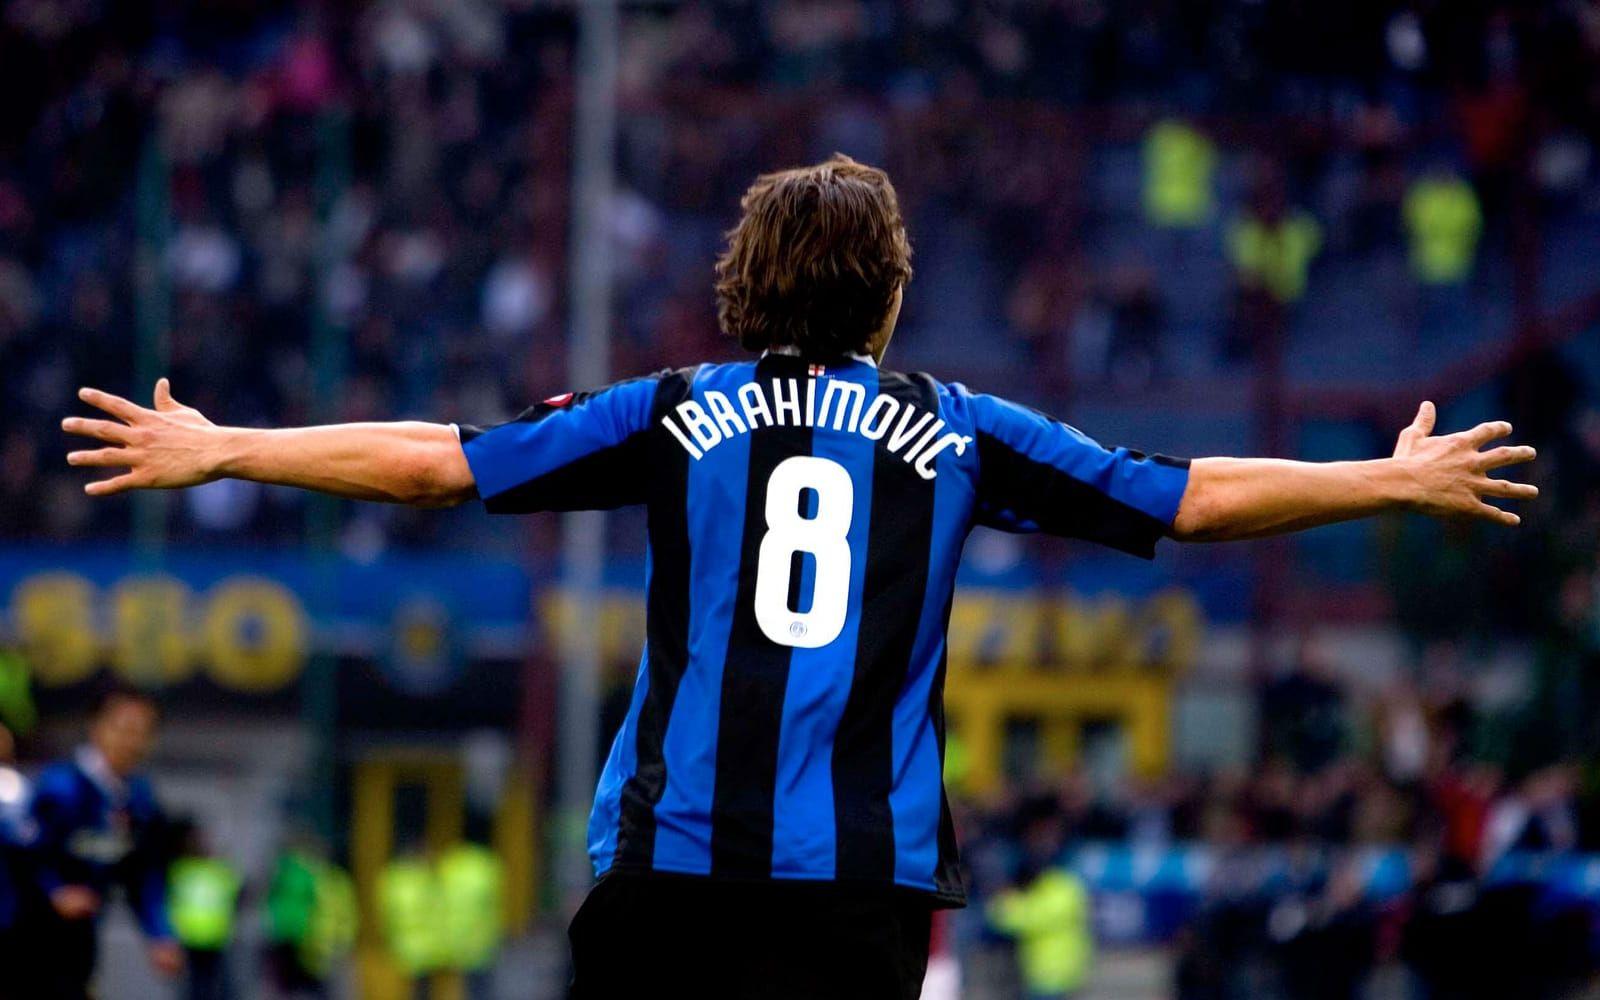 Under tiden i Inter utsågs han till årets fotbollsspelare, och årets utländska fotbollsspelare, i Itailien. Foto: Bildbyrån